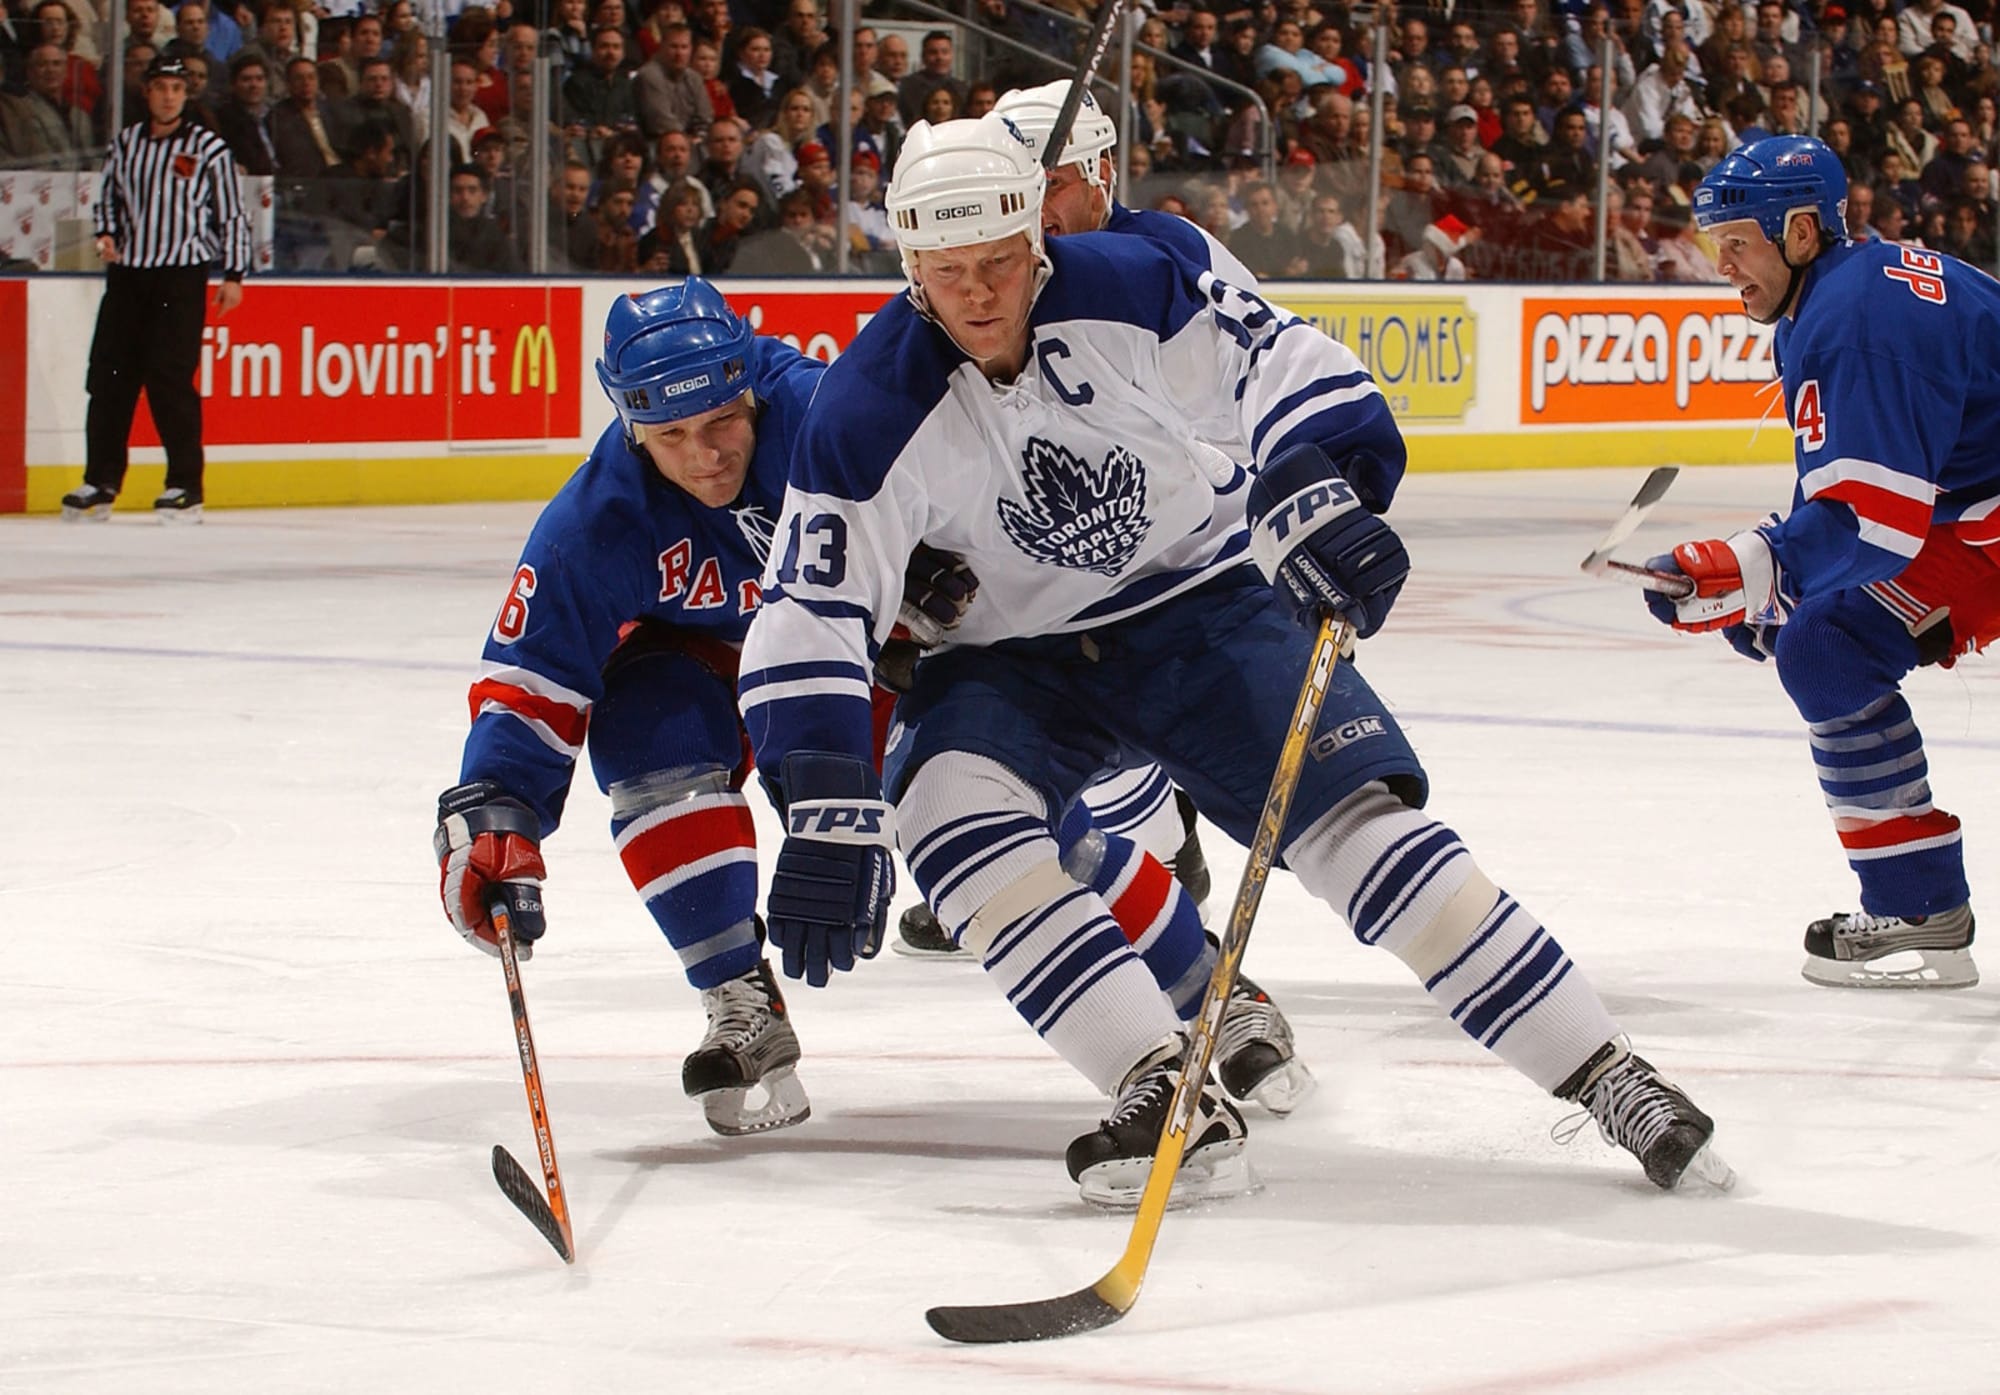 Toronto Maple Leafs - Number 13 — Mats Sundin. #WorldPhotographyDay  #TMLtalk